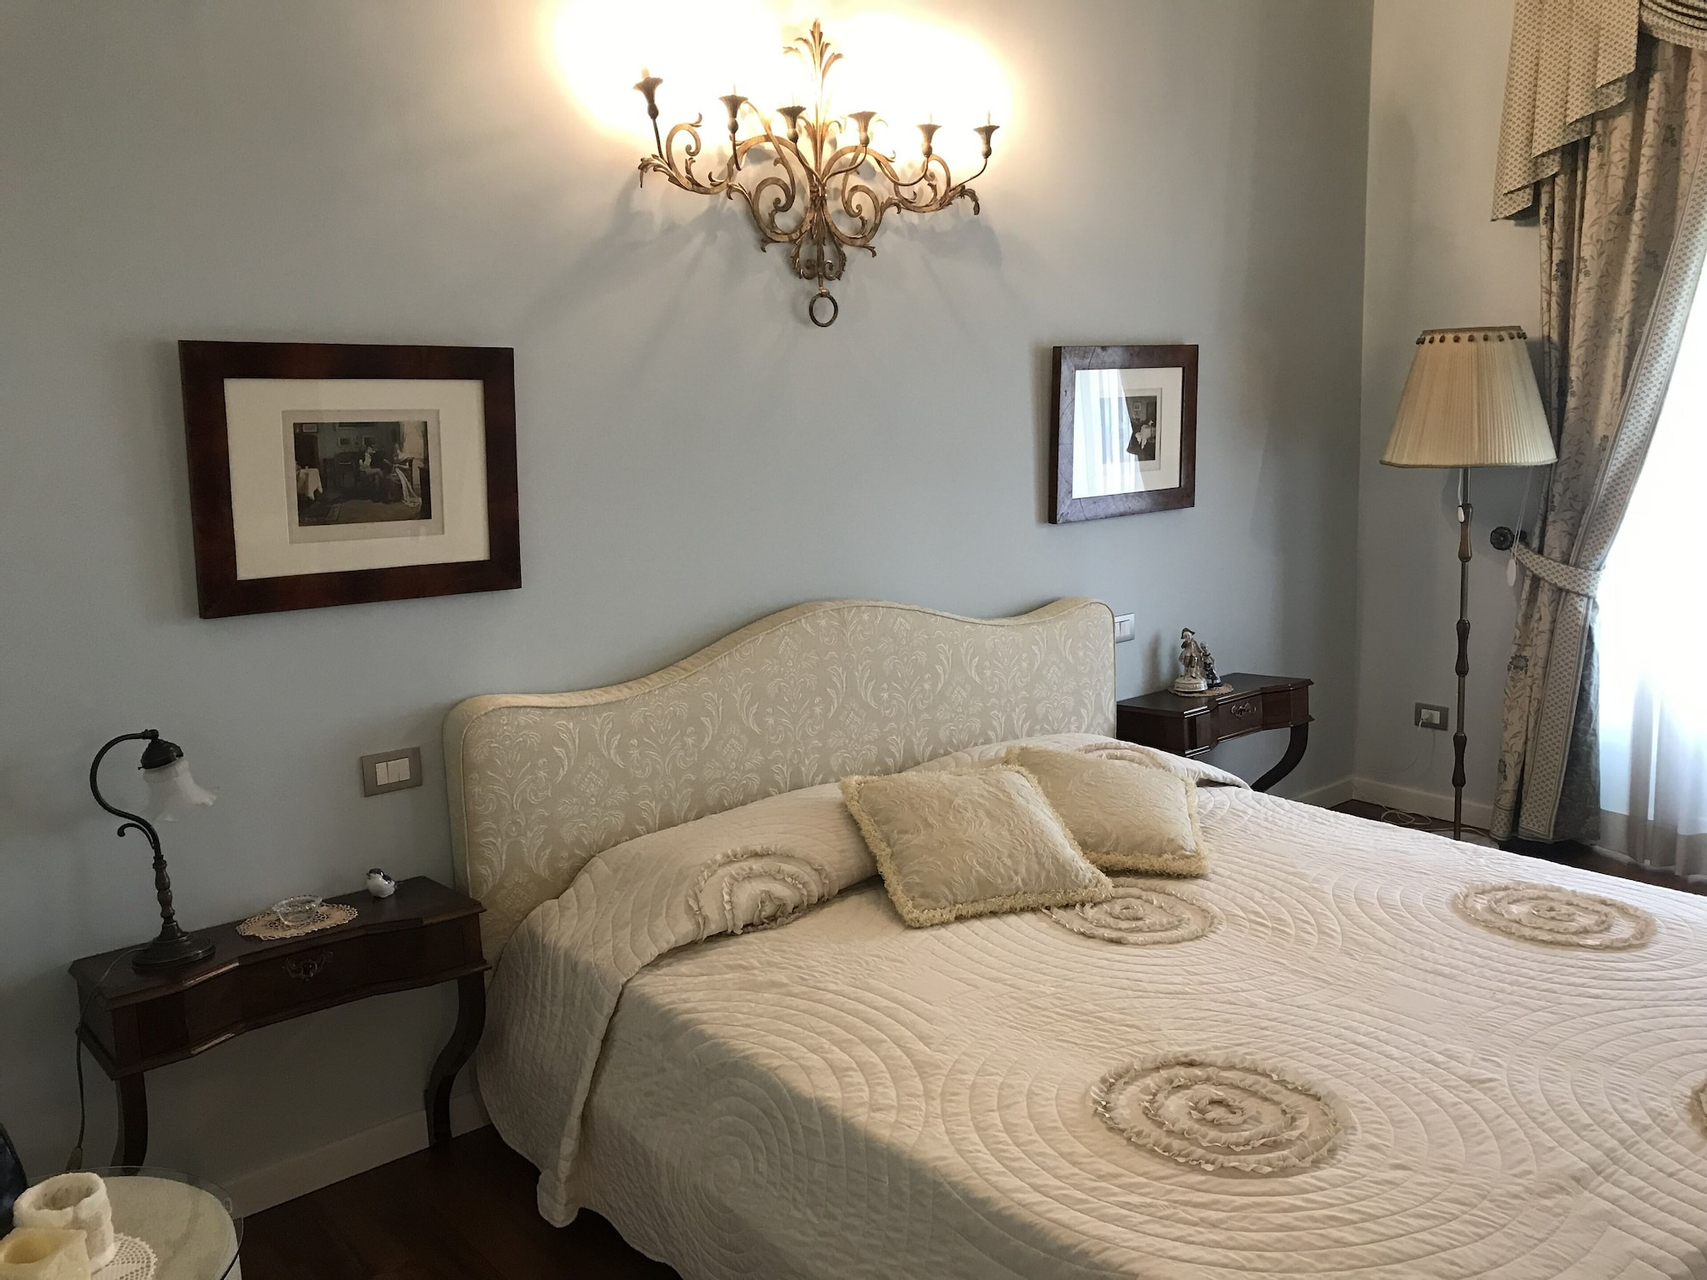 Bedroom 3, Villa Rigatti, Udine